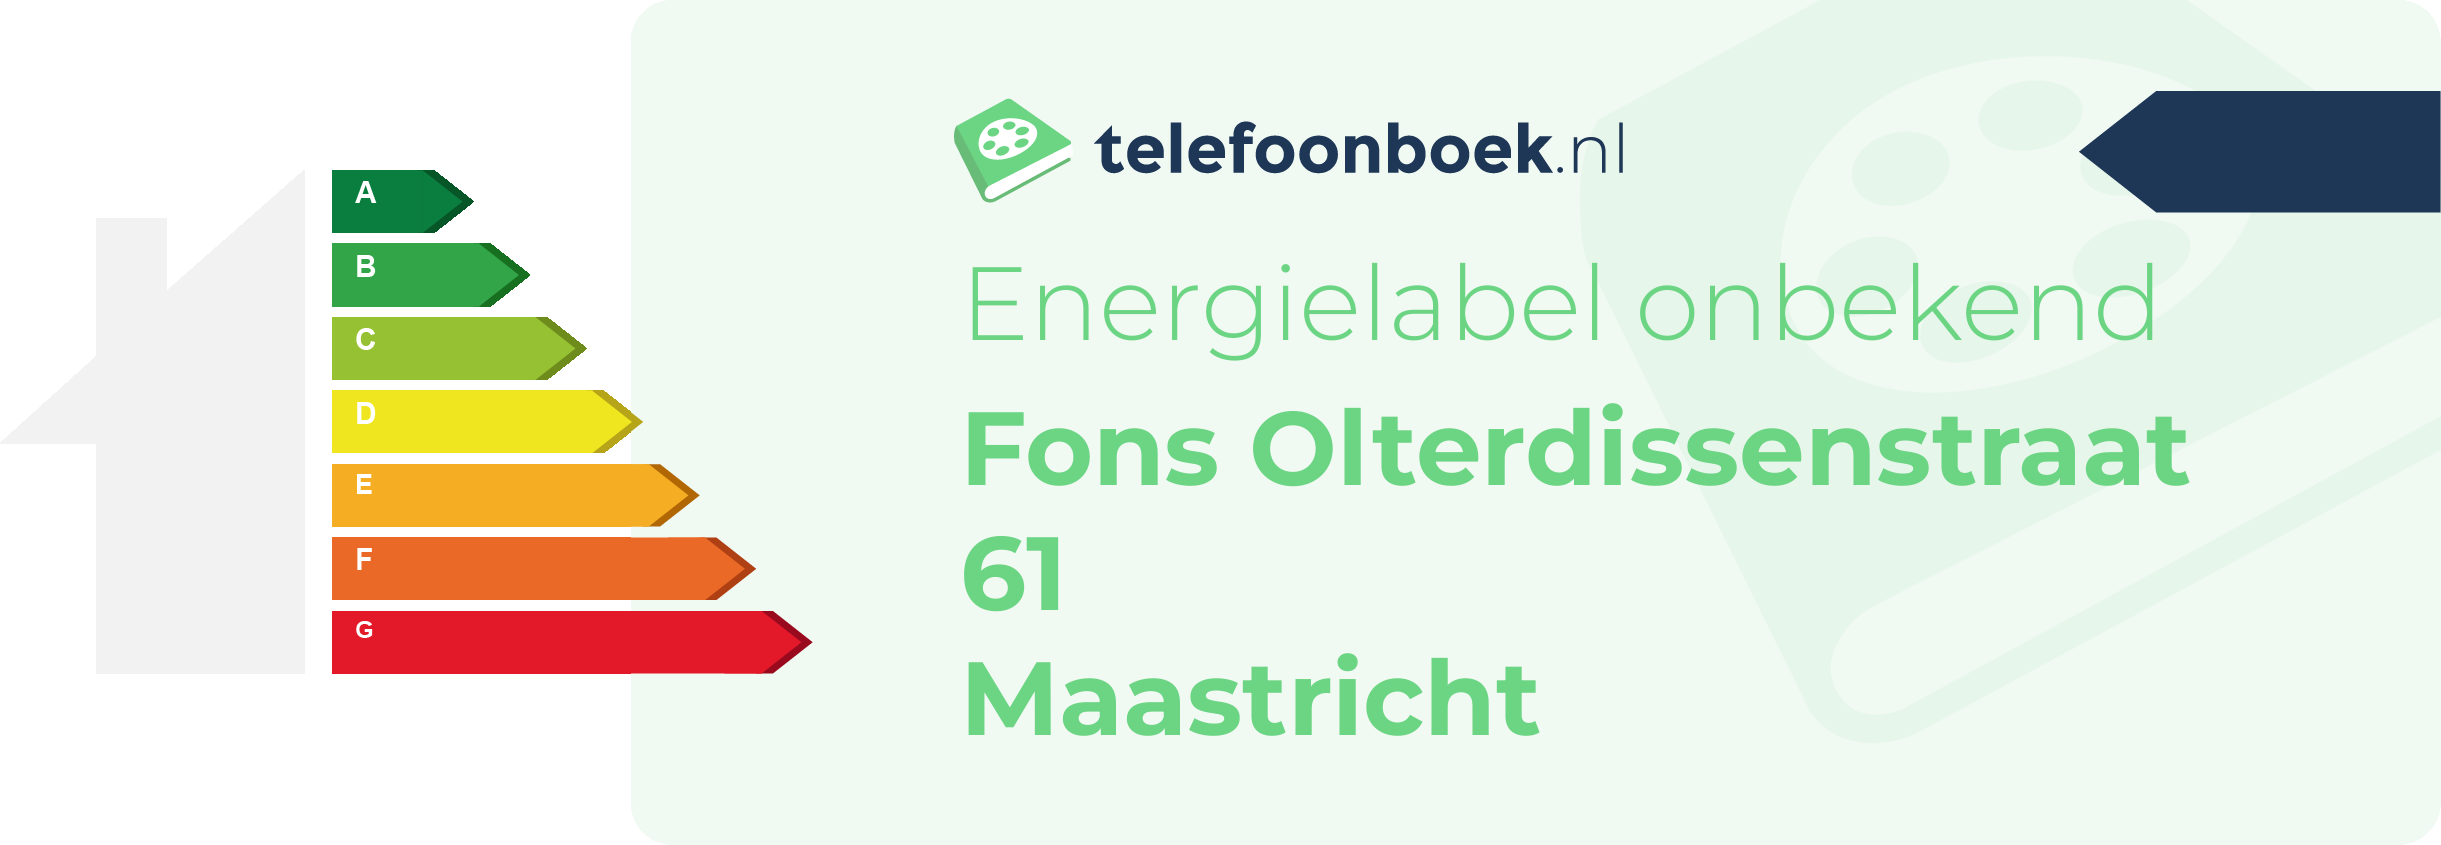 Energielabel Fons Olterdissenstraat 61 Maastricht